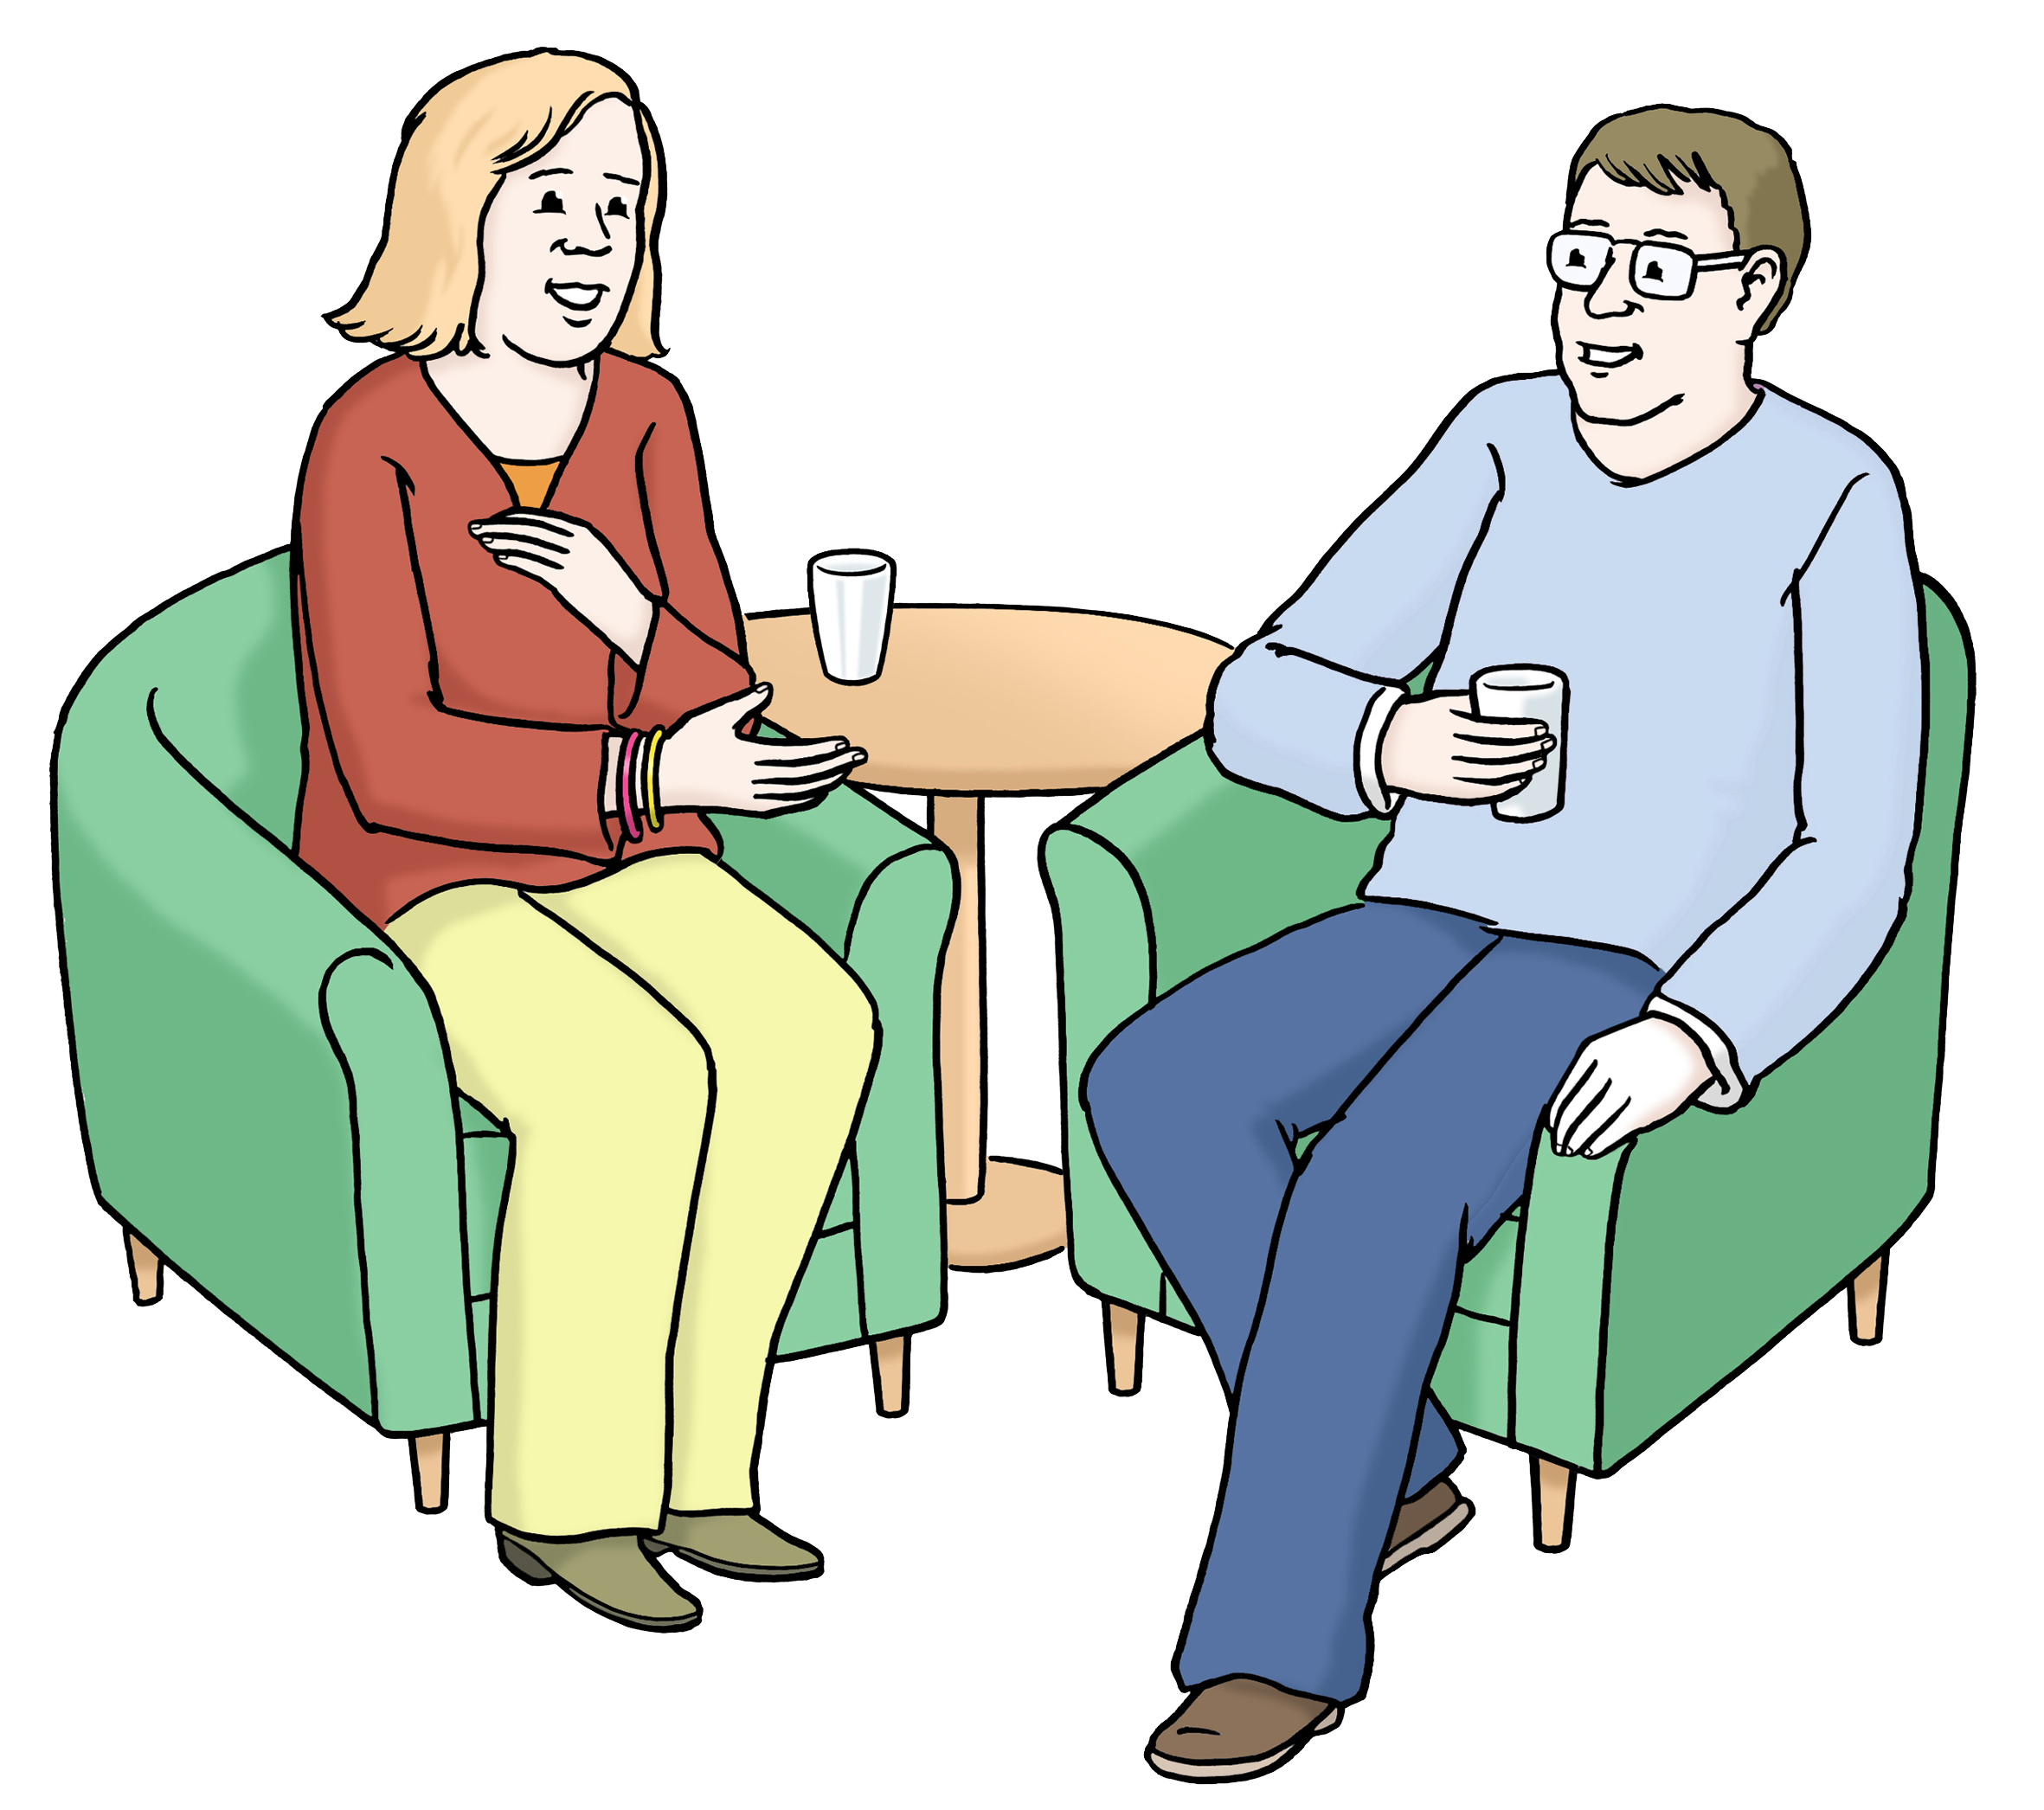 Zeichnung zweier Personen in einem Gespräch.